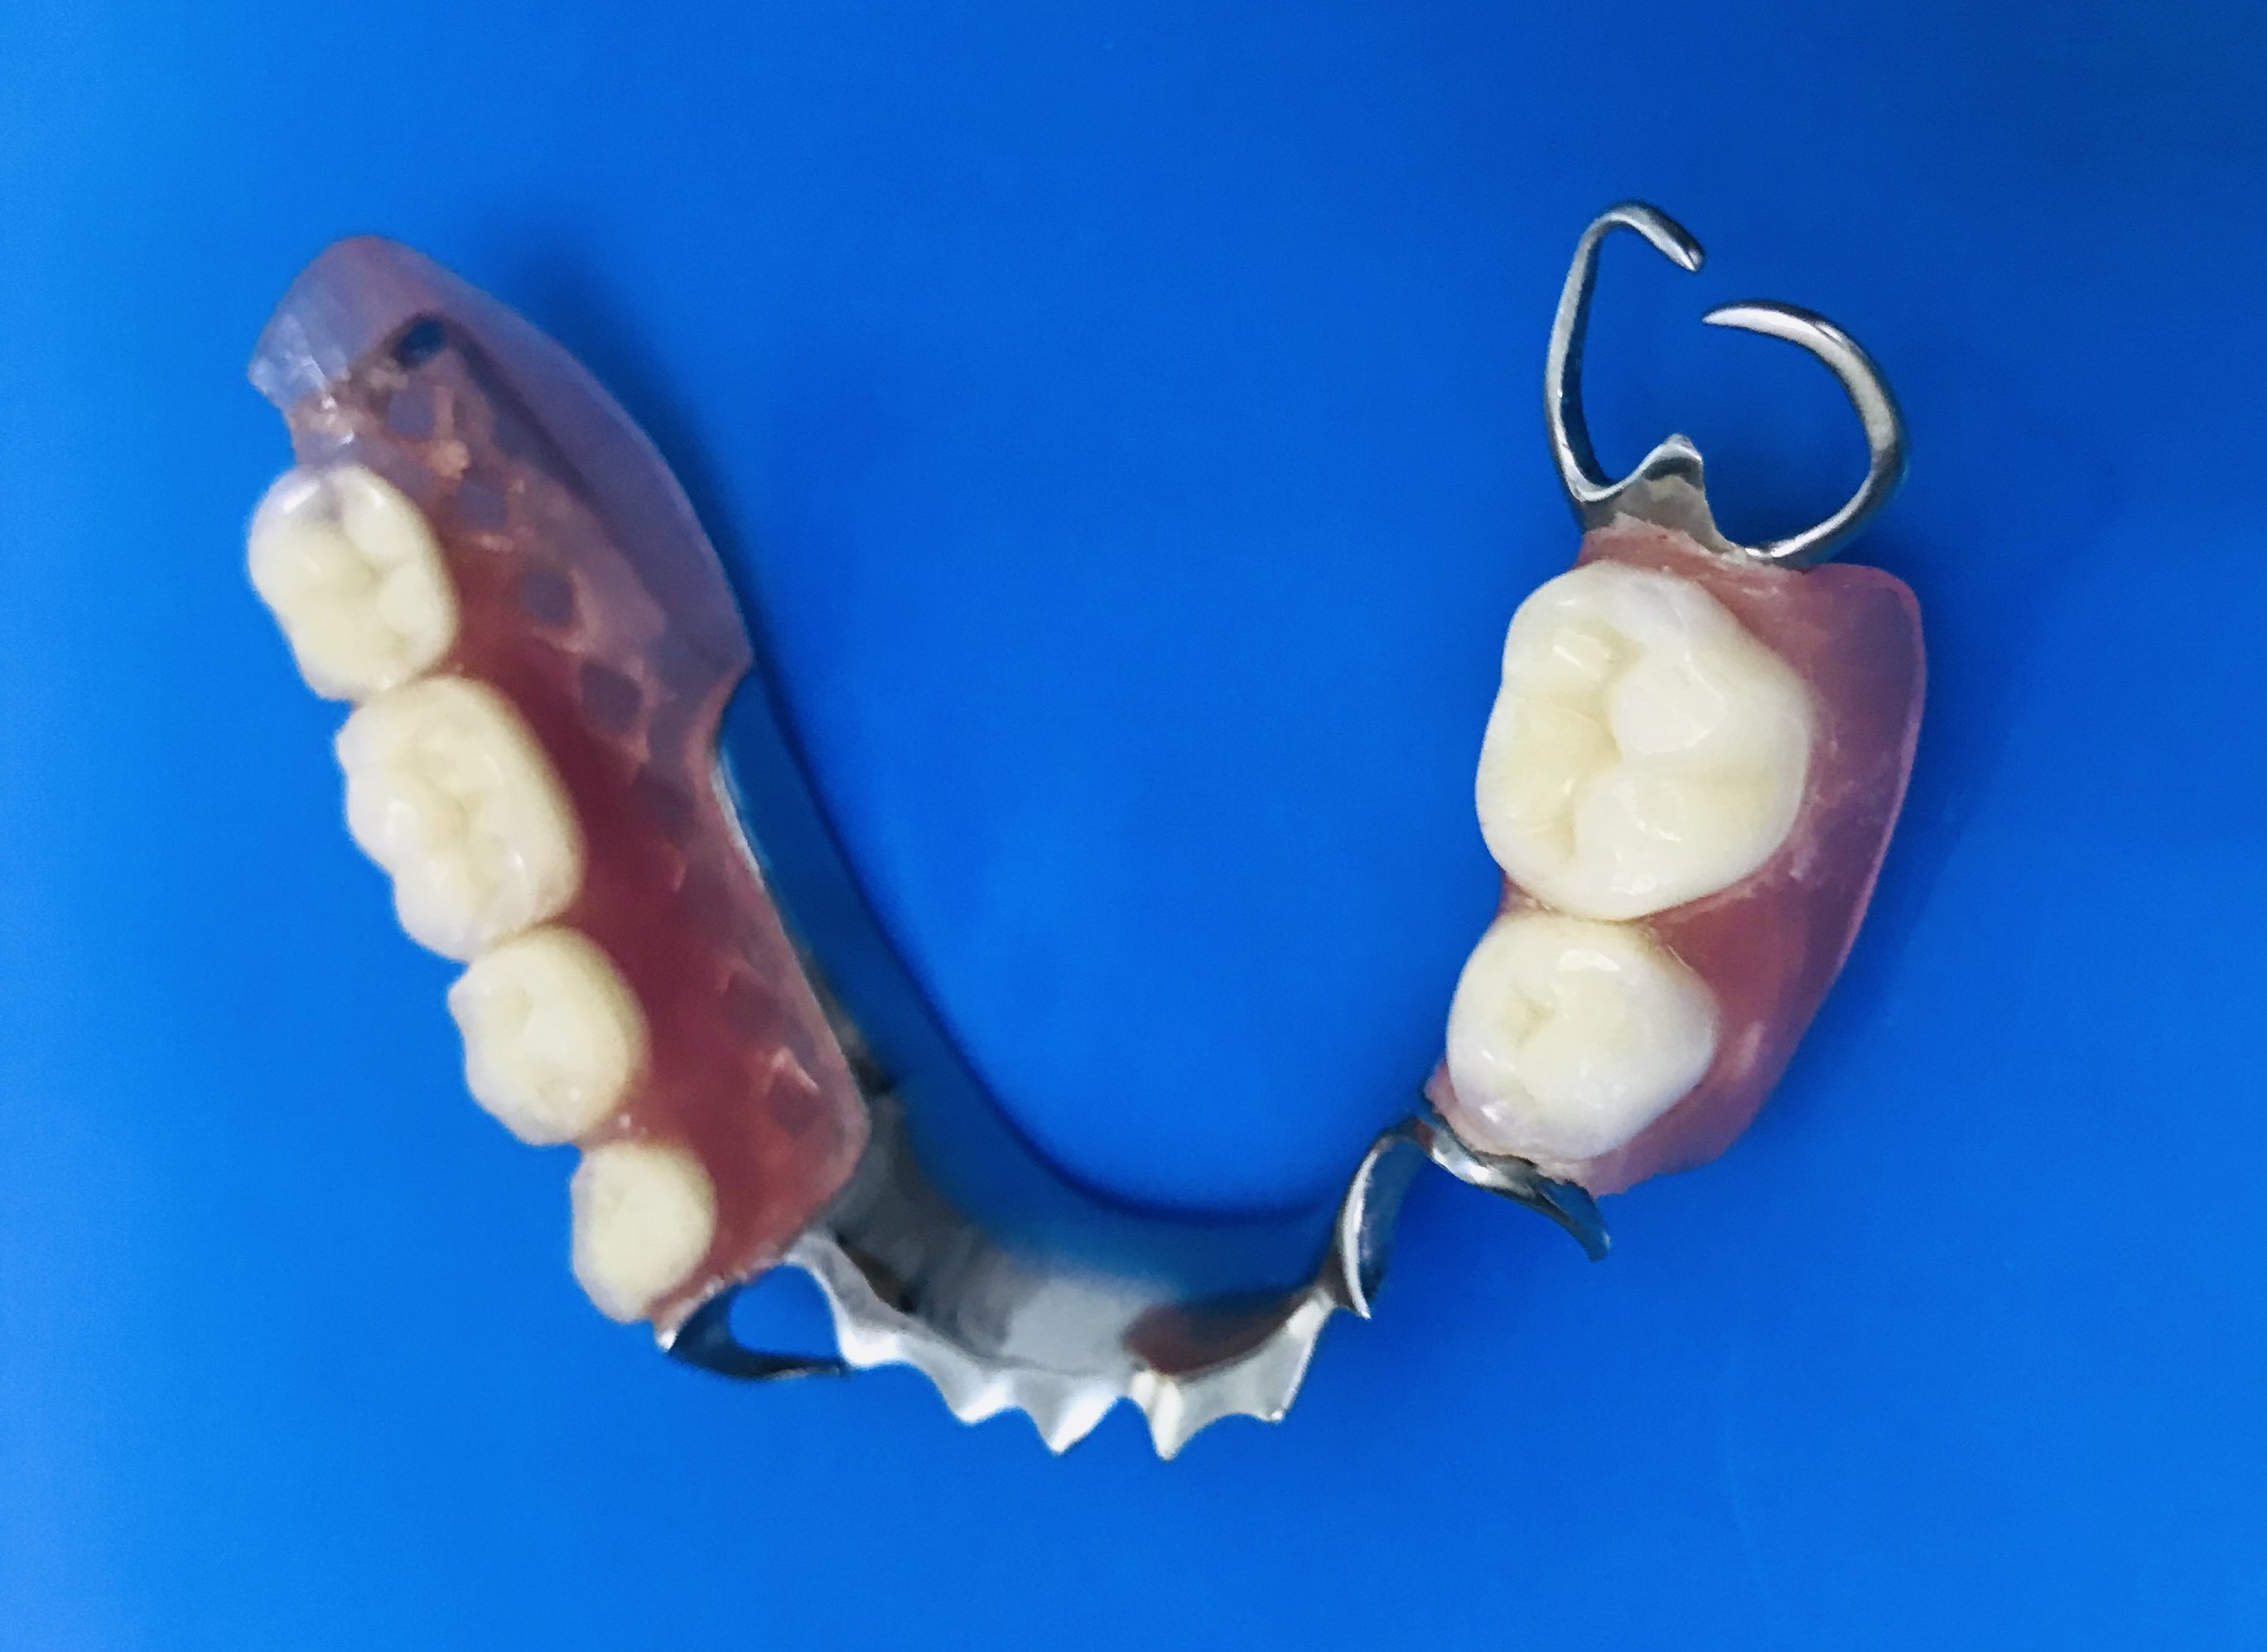 活动修复是通过金属或塑料卡环,固定在旁边天然牙齿上或直接扣在牙床